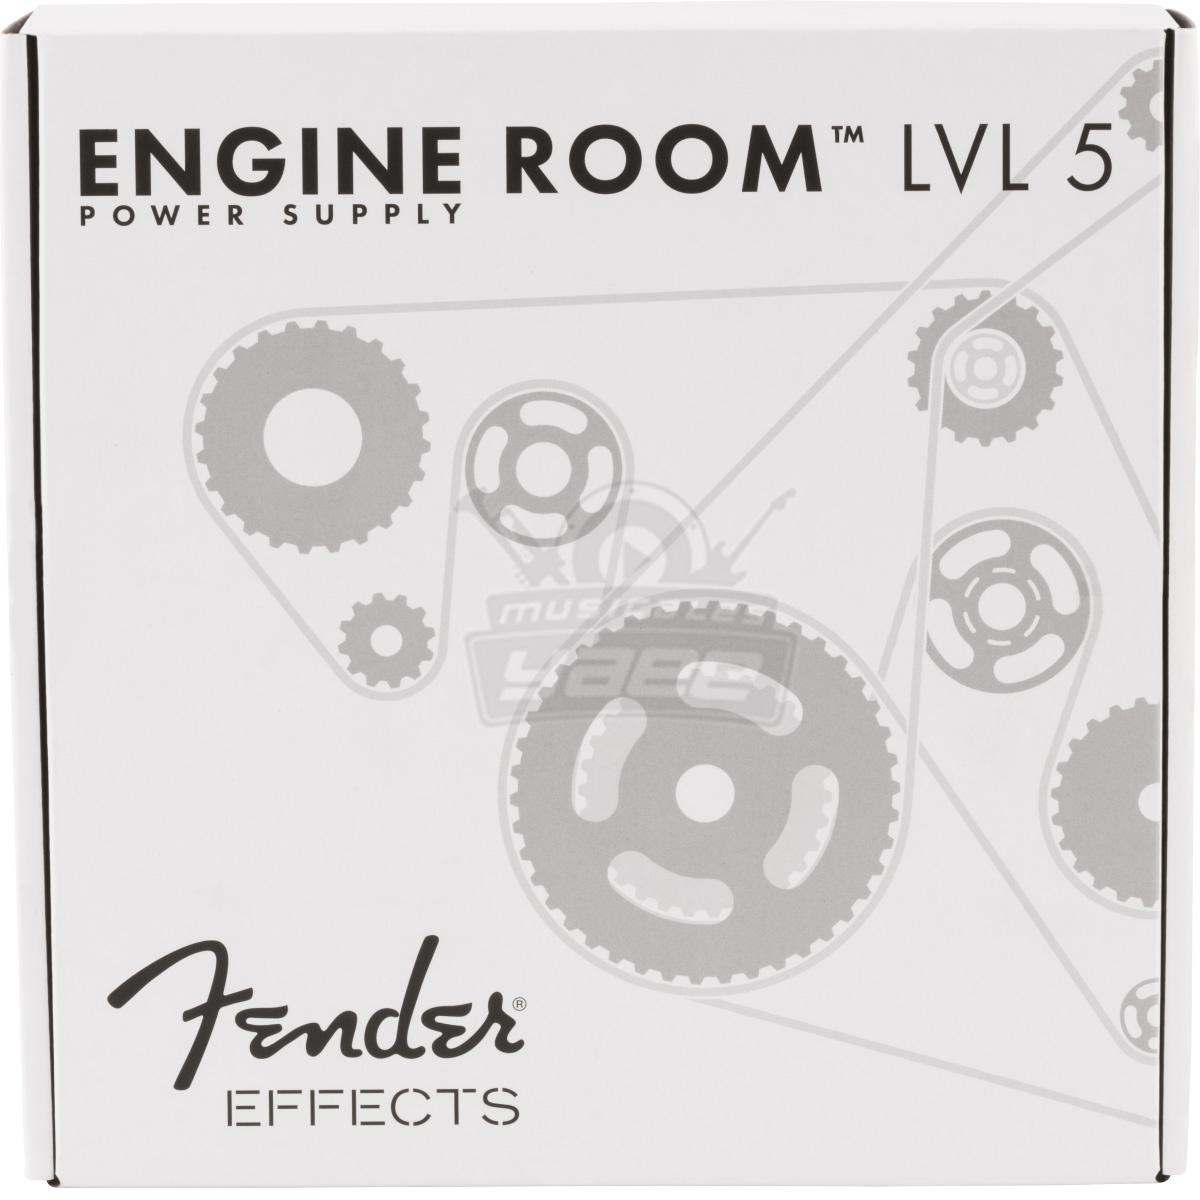 FENDER Engine Room LVL5 Power Supply 120V